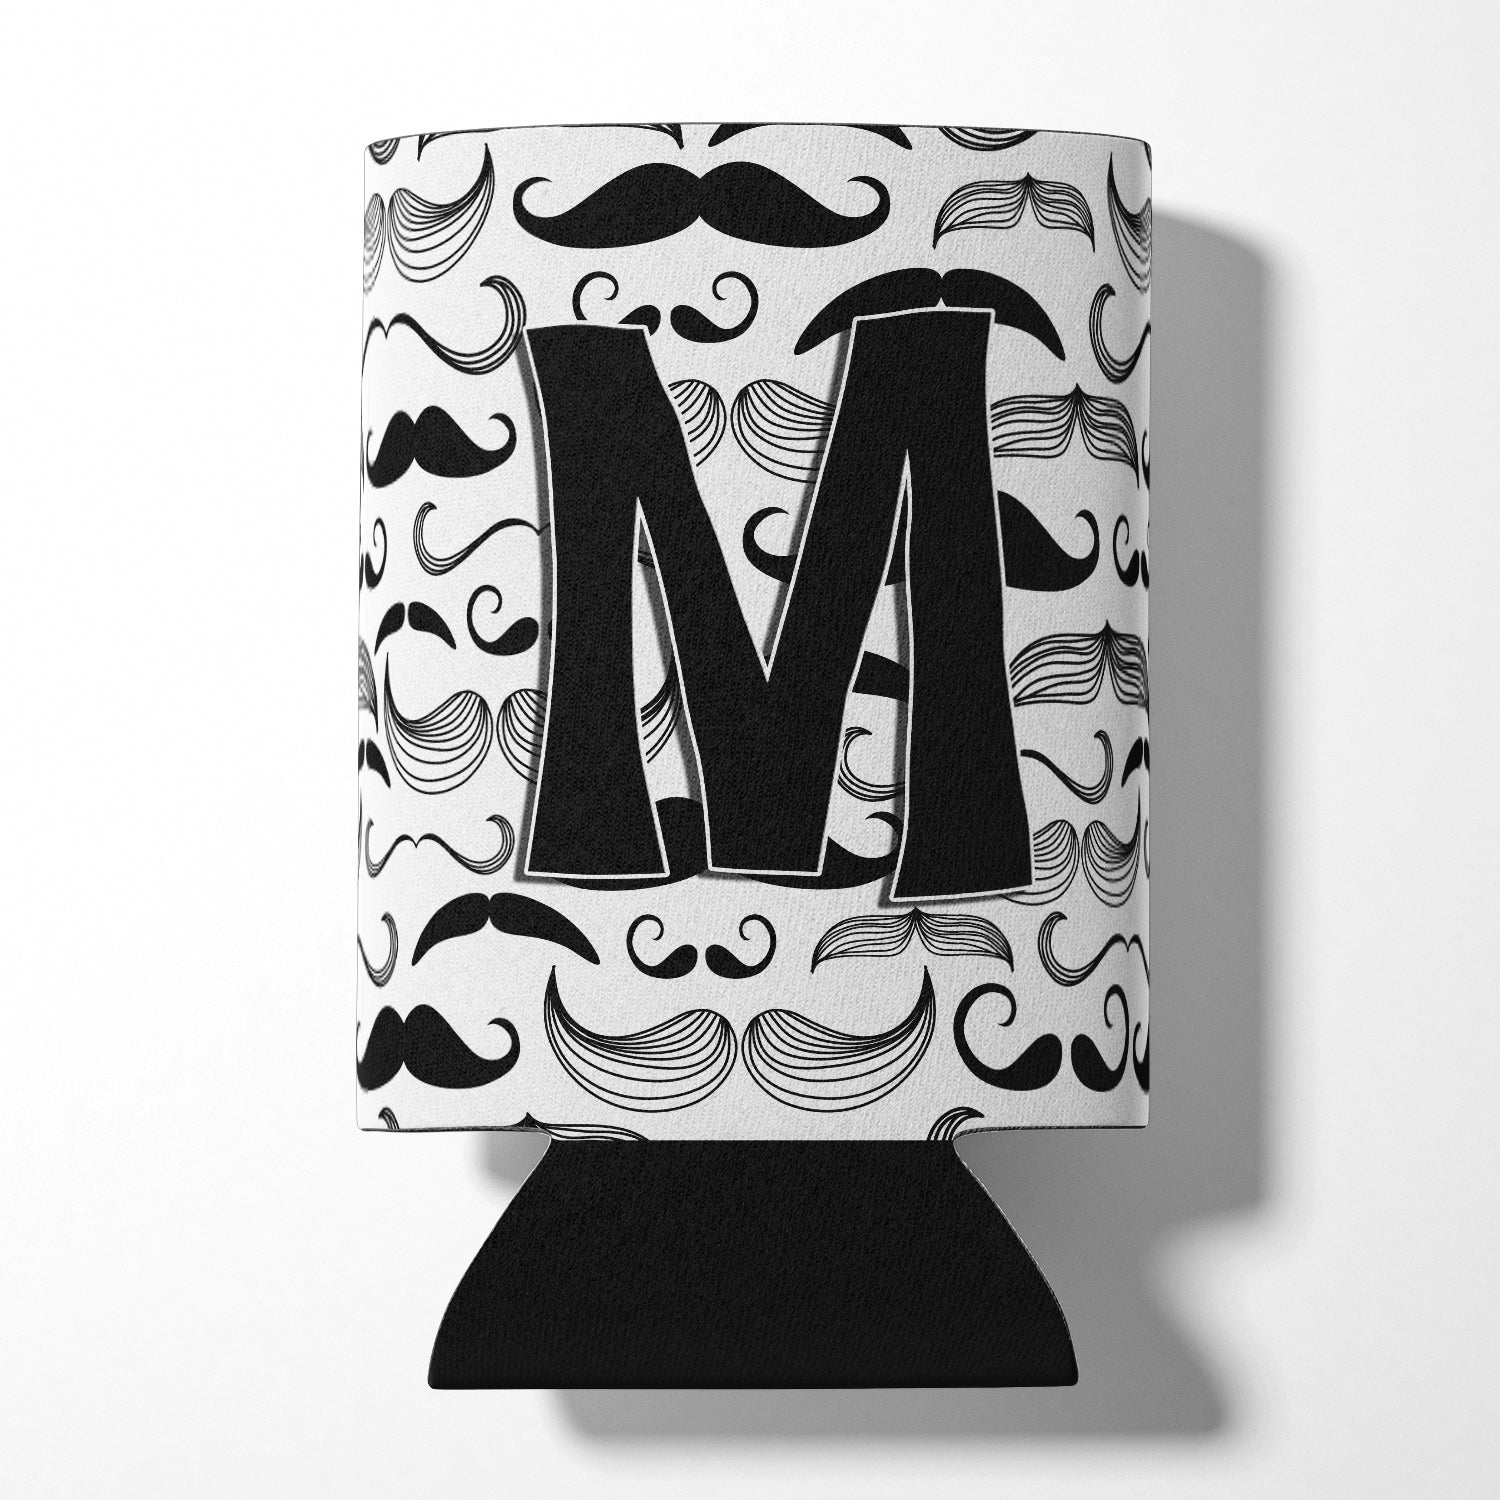 Letter M Moustache Initial Can or Bottle Hugger CJ2009-MCC.